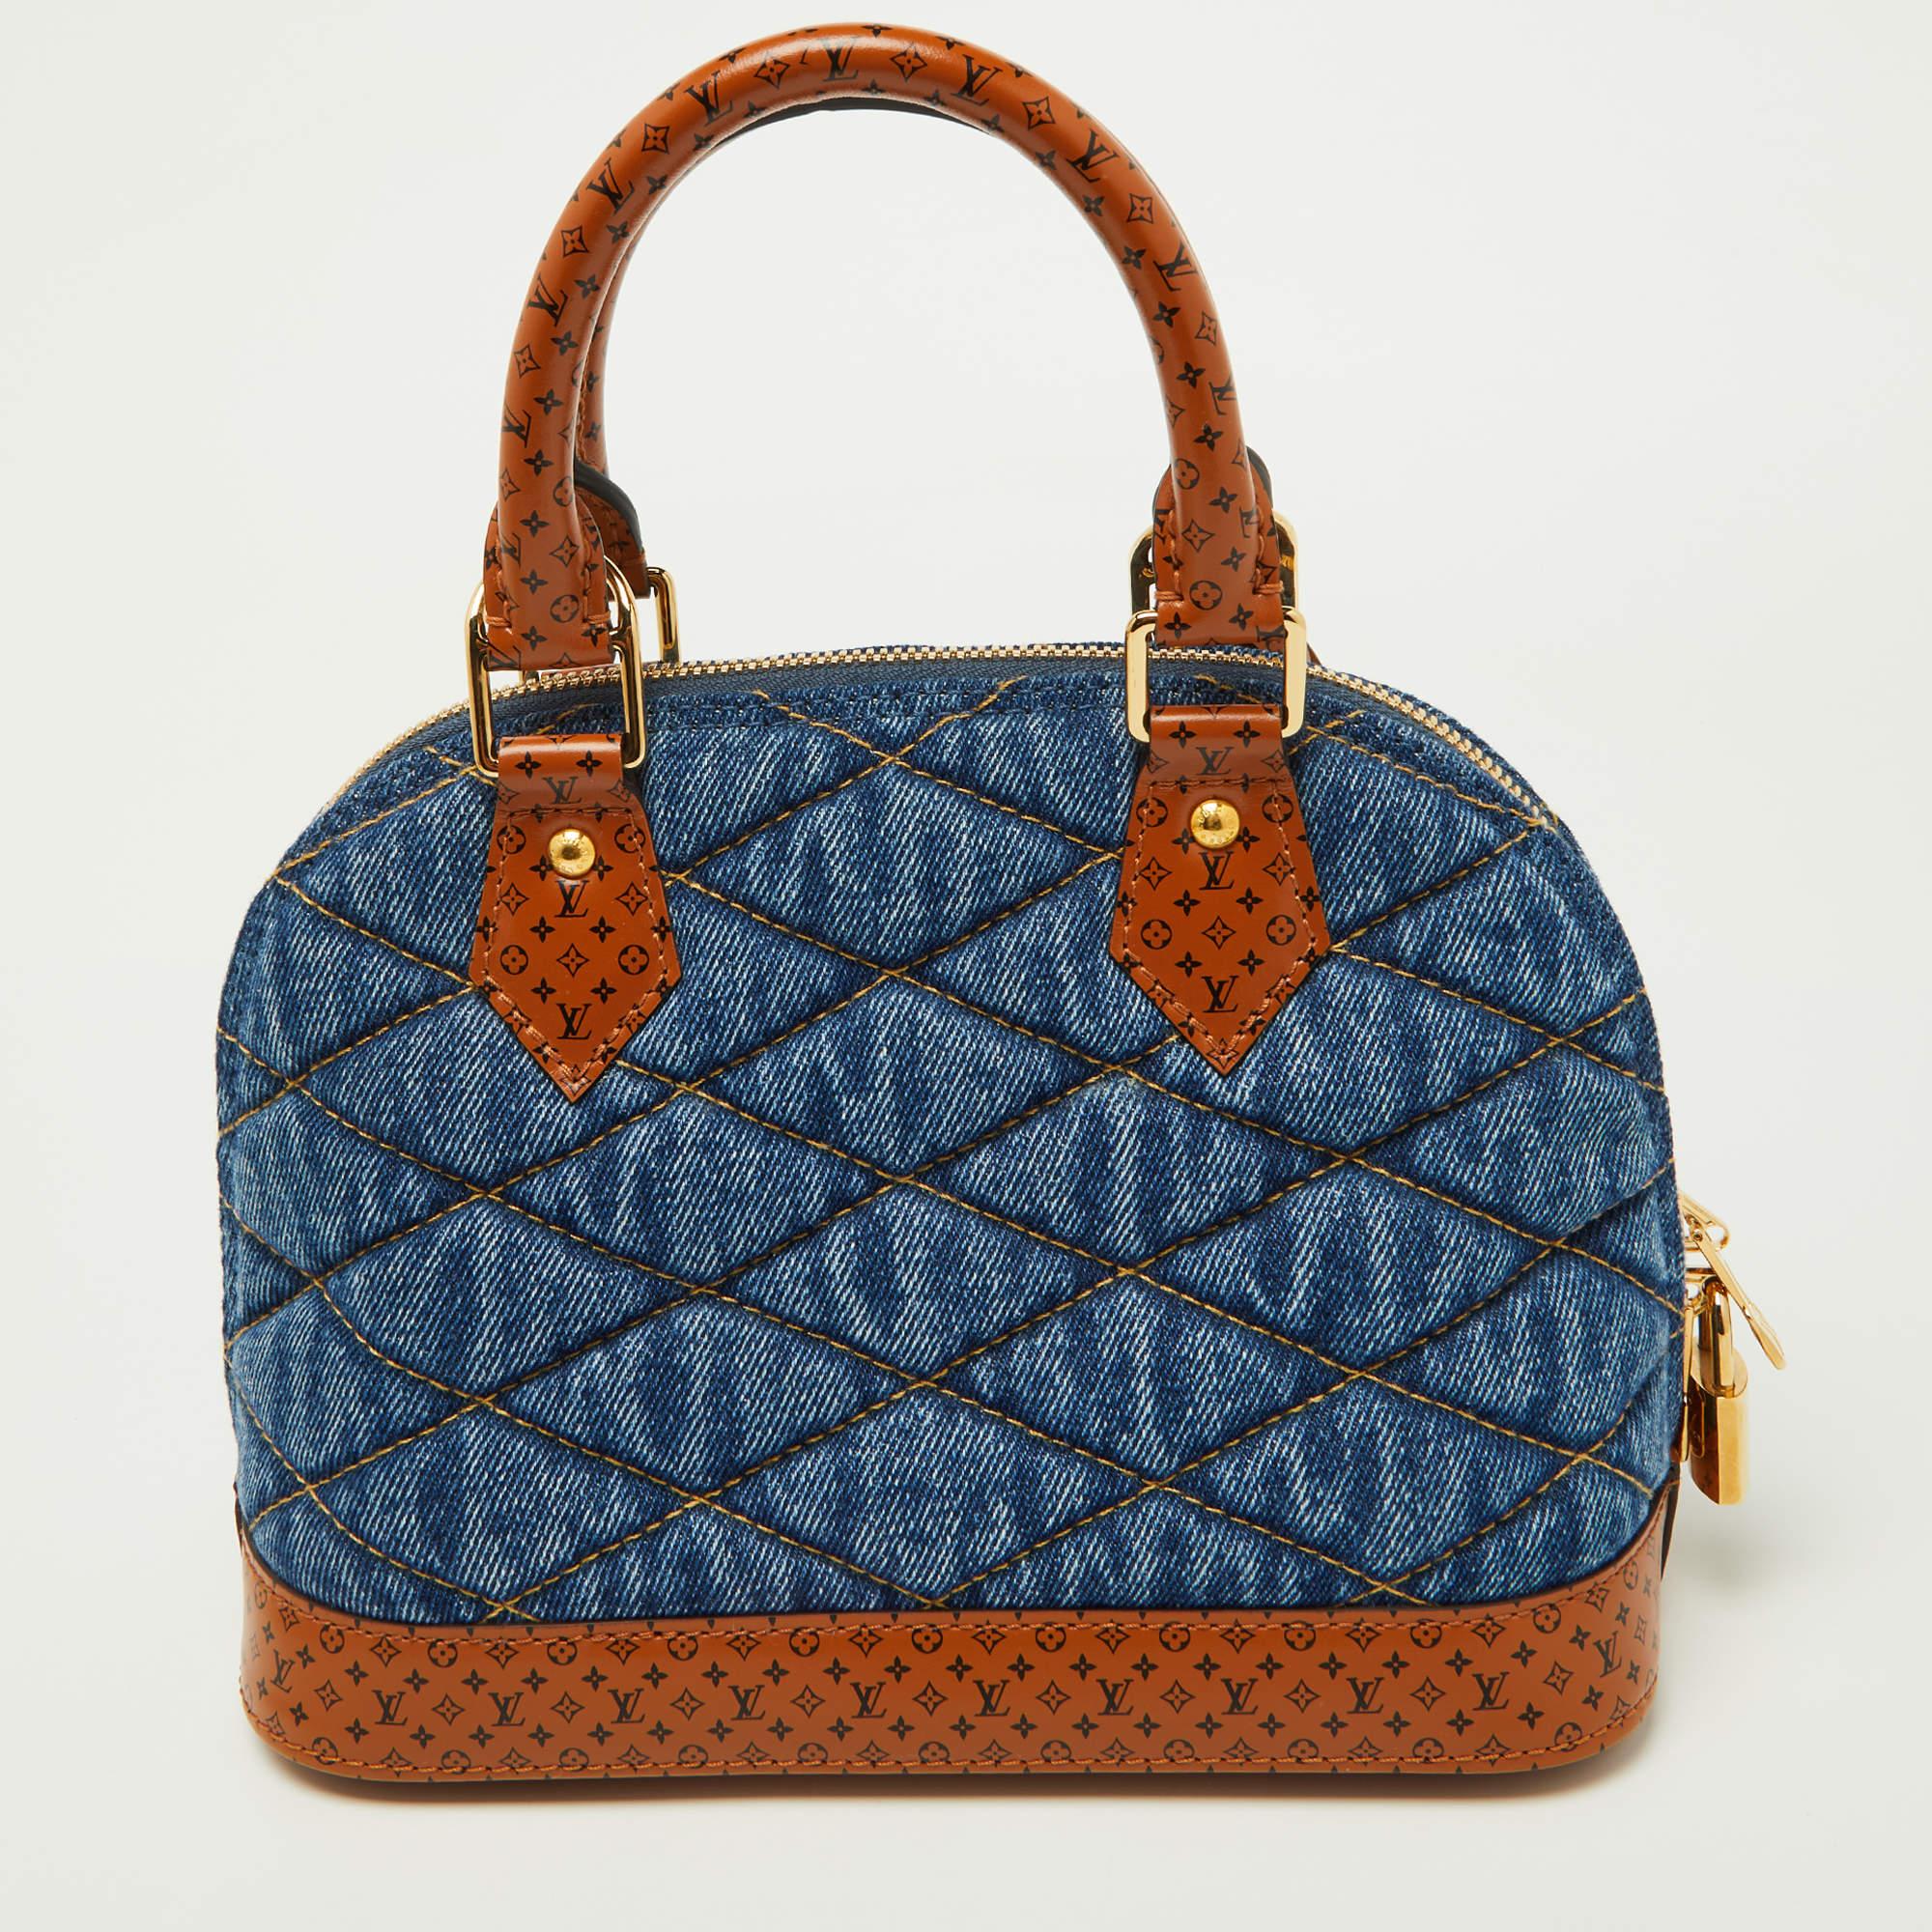 De tous les irrésistibles sacs à main de Louis Vuitton, l'Alma est le plus structuré. Présenté pour la première fois en 1934 par Gaston-Louis Vuitton, l'Alma est un classique qui a reçu l'amour des icônes de la mode. Cette pièce est réalisée en